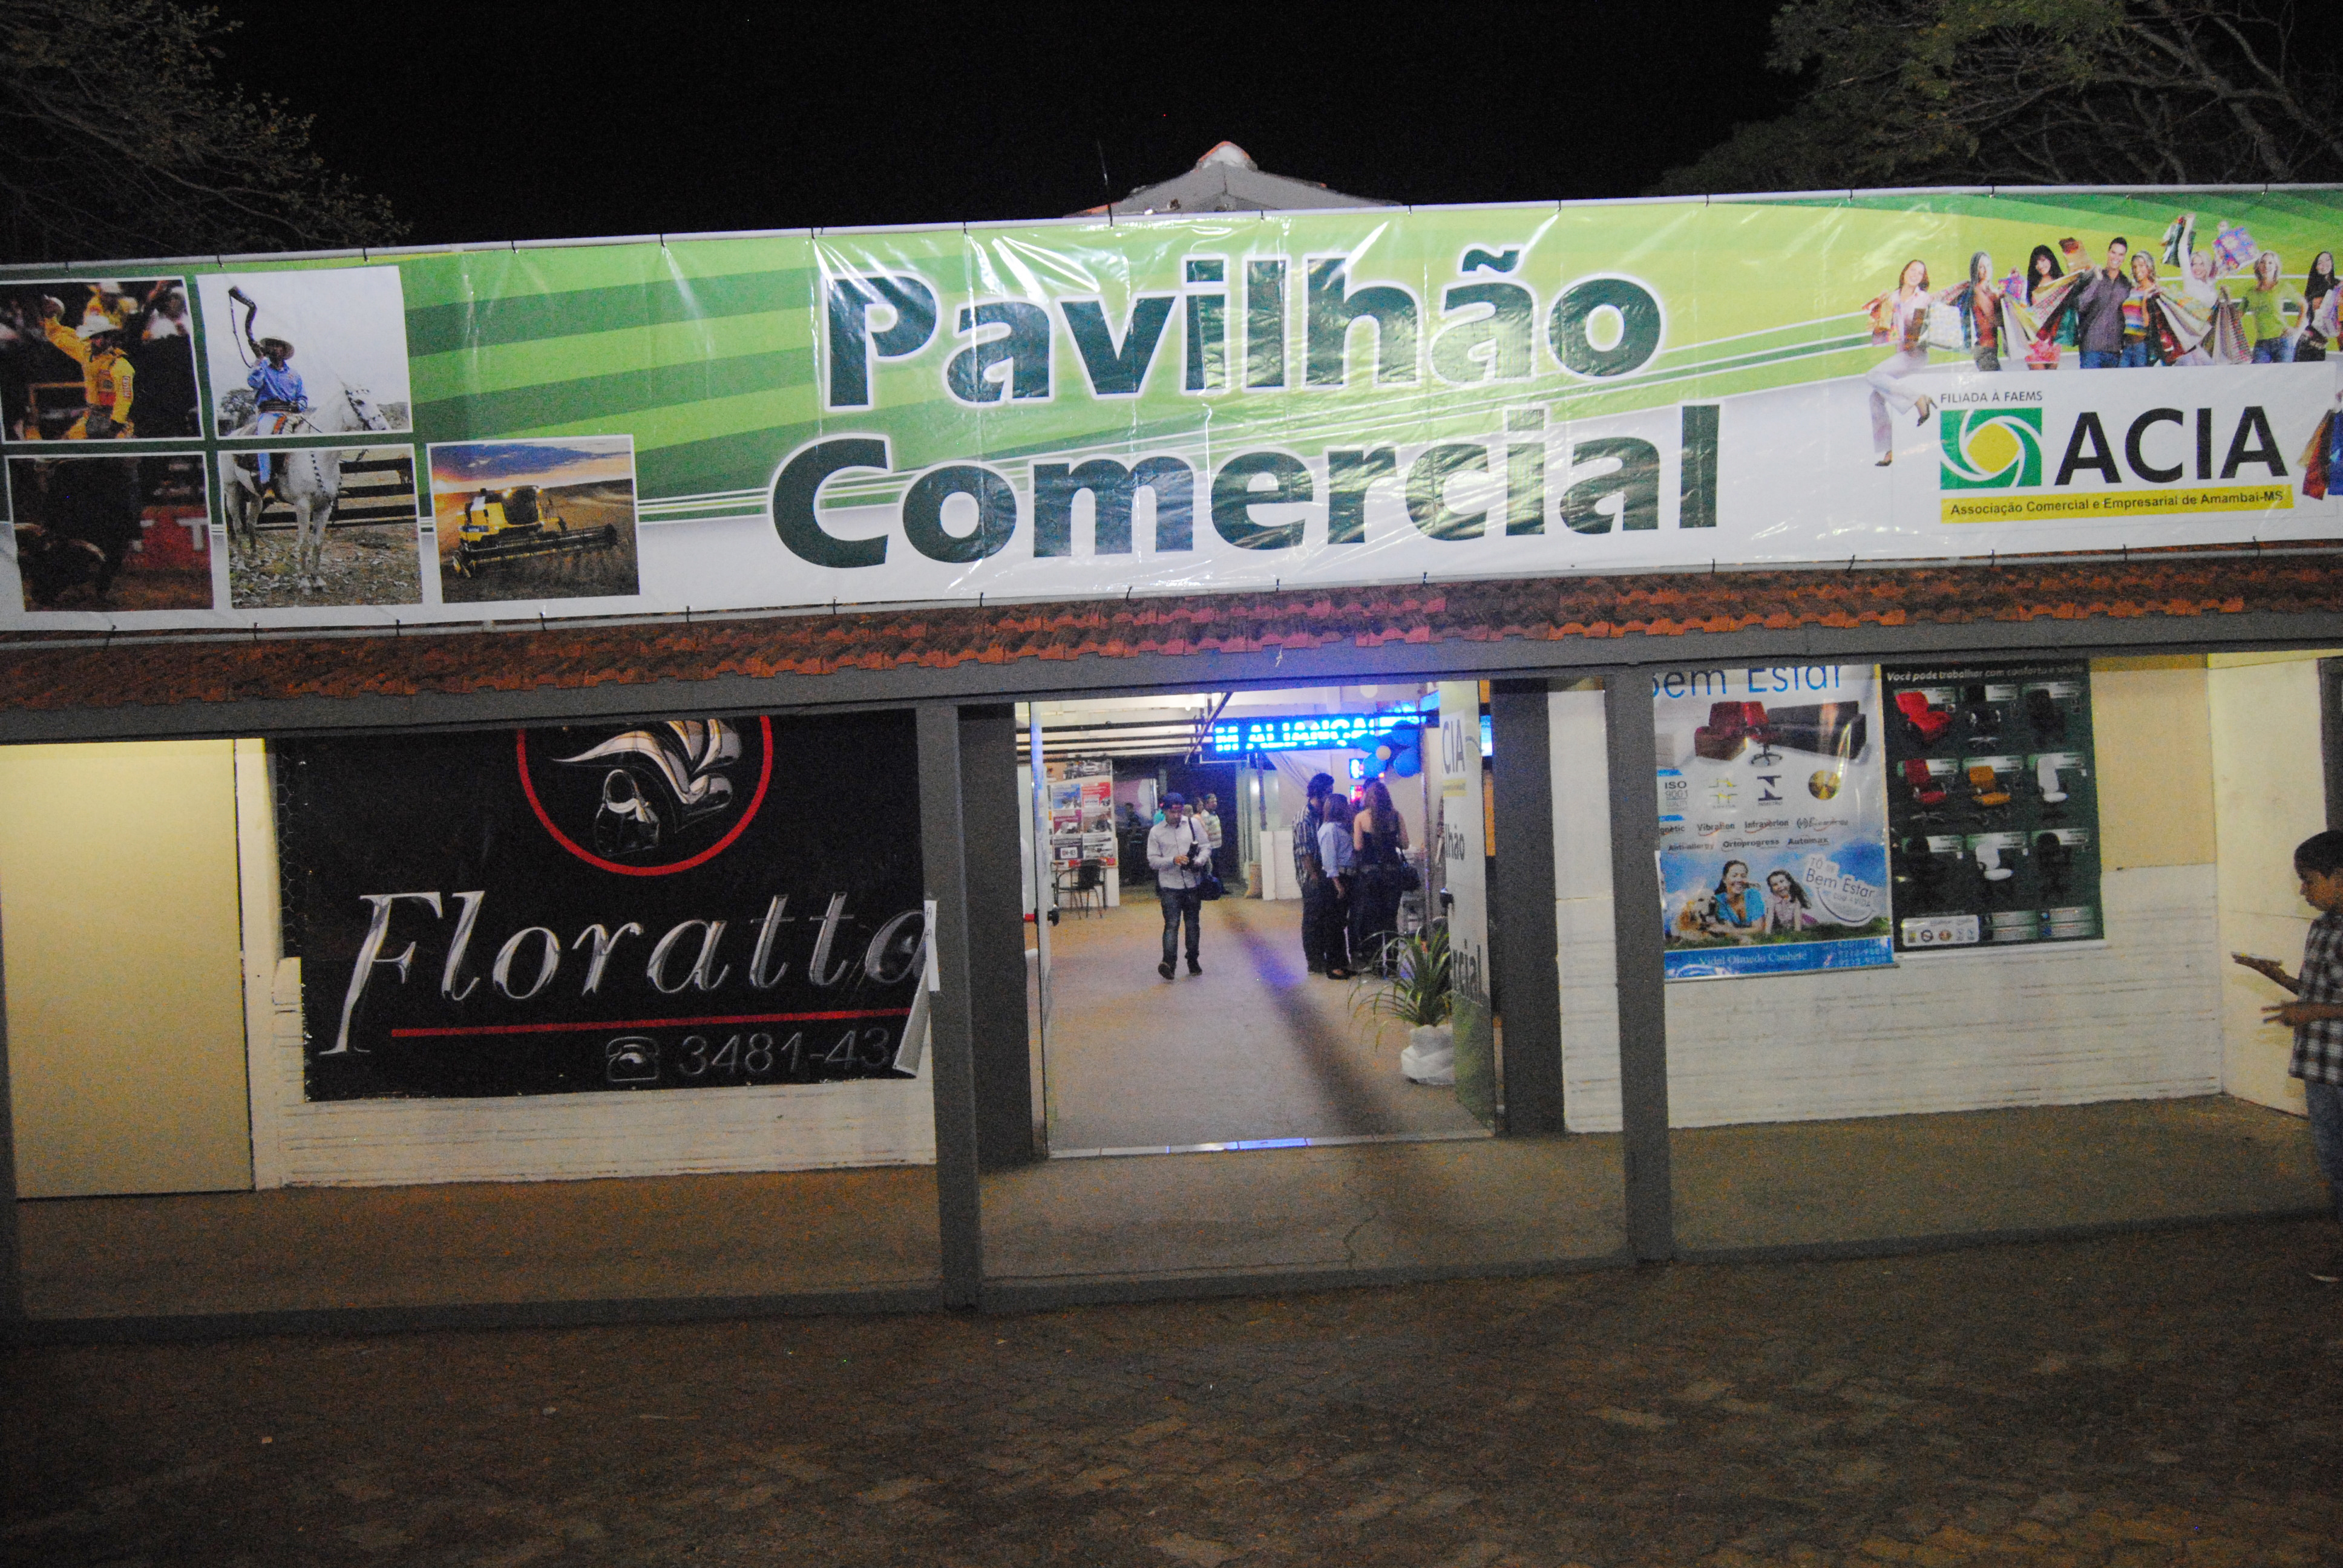 Pavilhão Comercial é tradição na Expobai / Foto: Moreira Produção